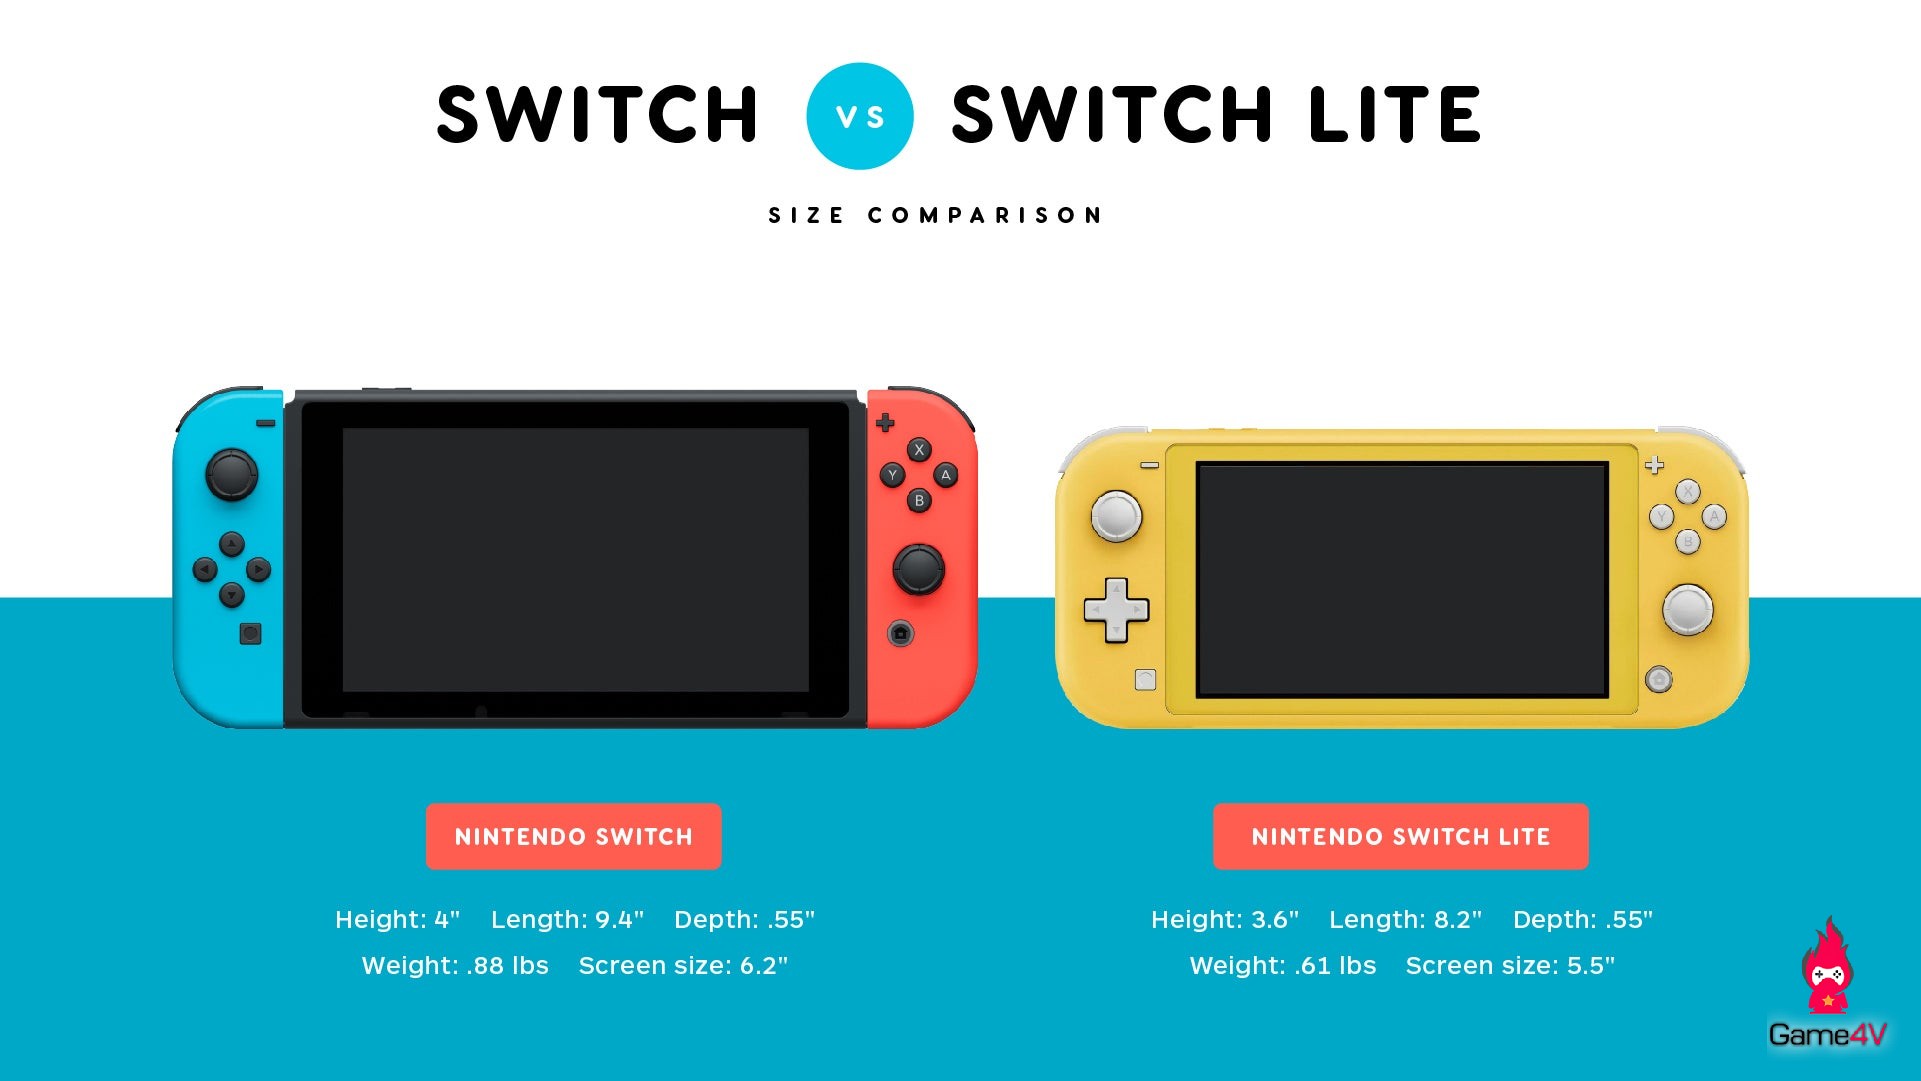 Nintendo switch коды ошибок. Nintendo Switch Lite Размеры. Nintendo Switch габариты. Nintendo Switch vs Nintendo Switch Lite Size. Нинтендо свитч размер дисплея.